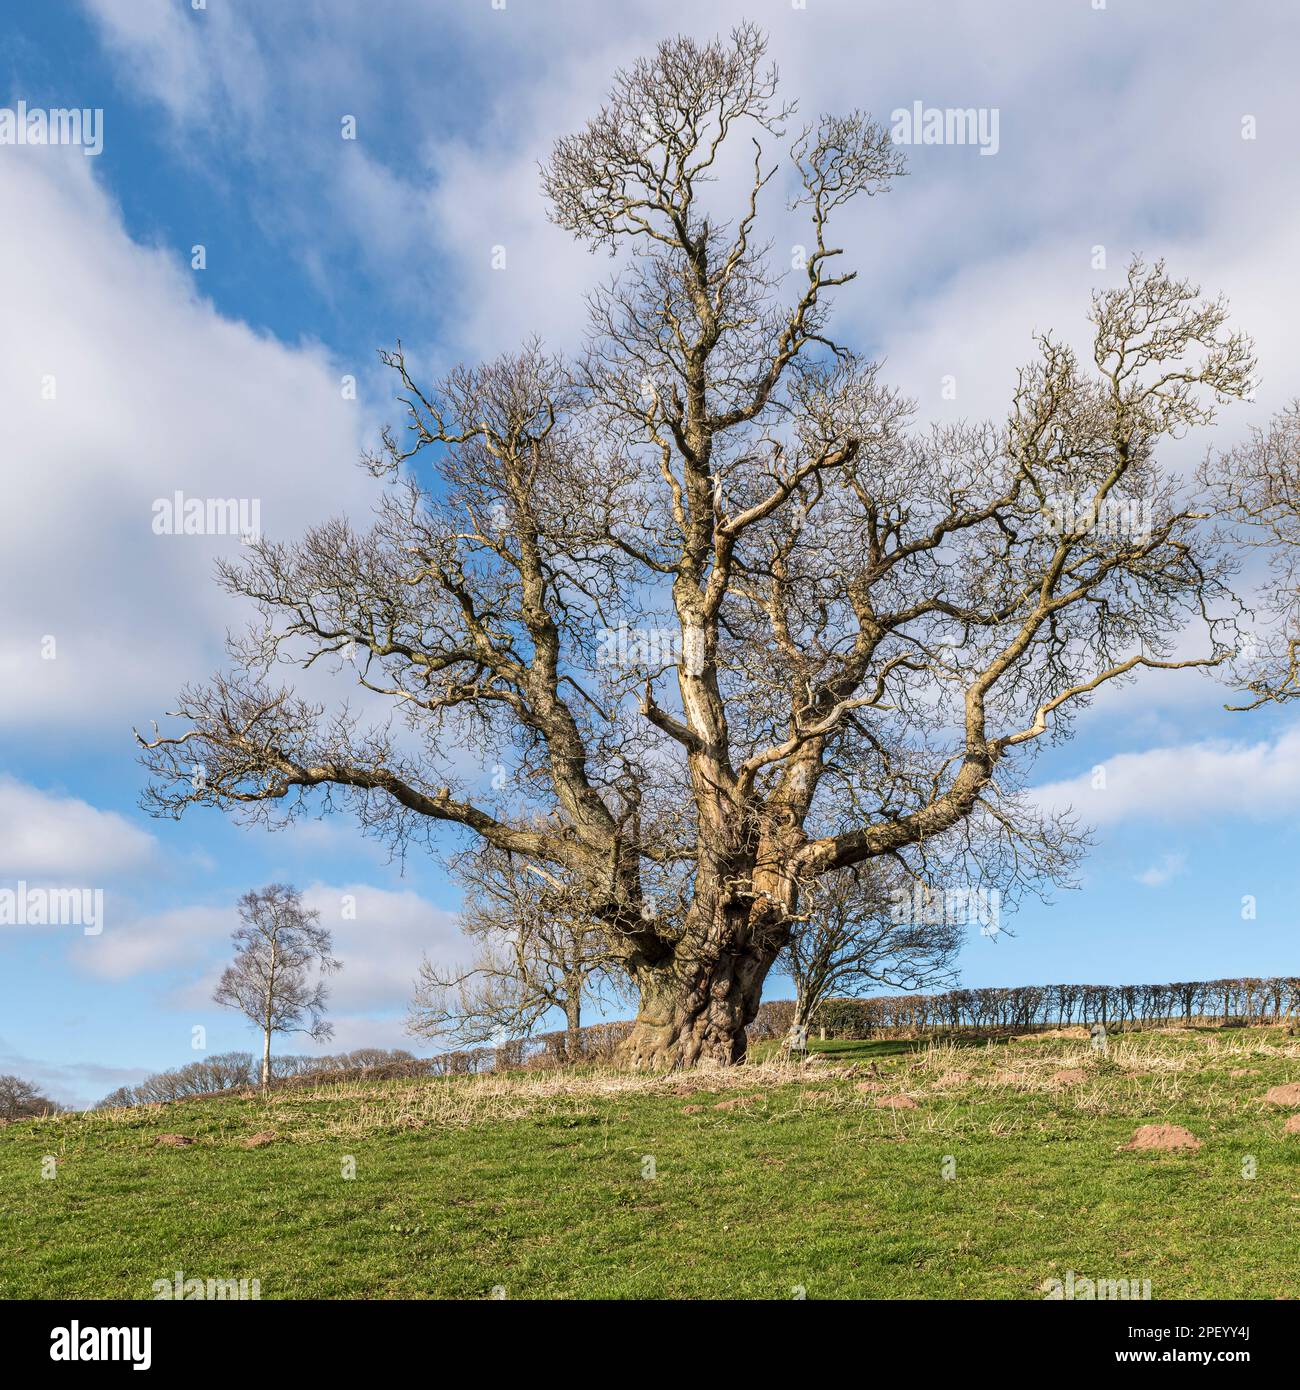 Un énorme vieux châtaignier (Castanea sativa), un arbre de 'teran' d'environ 350 ans. Stonewall Hill, Powys, Royaume-Uni, sur la frontière gallois-anglais Banque D'Images